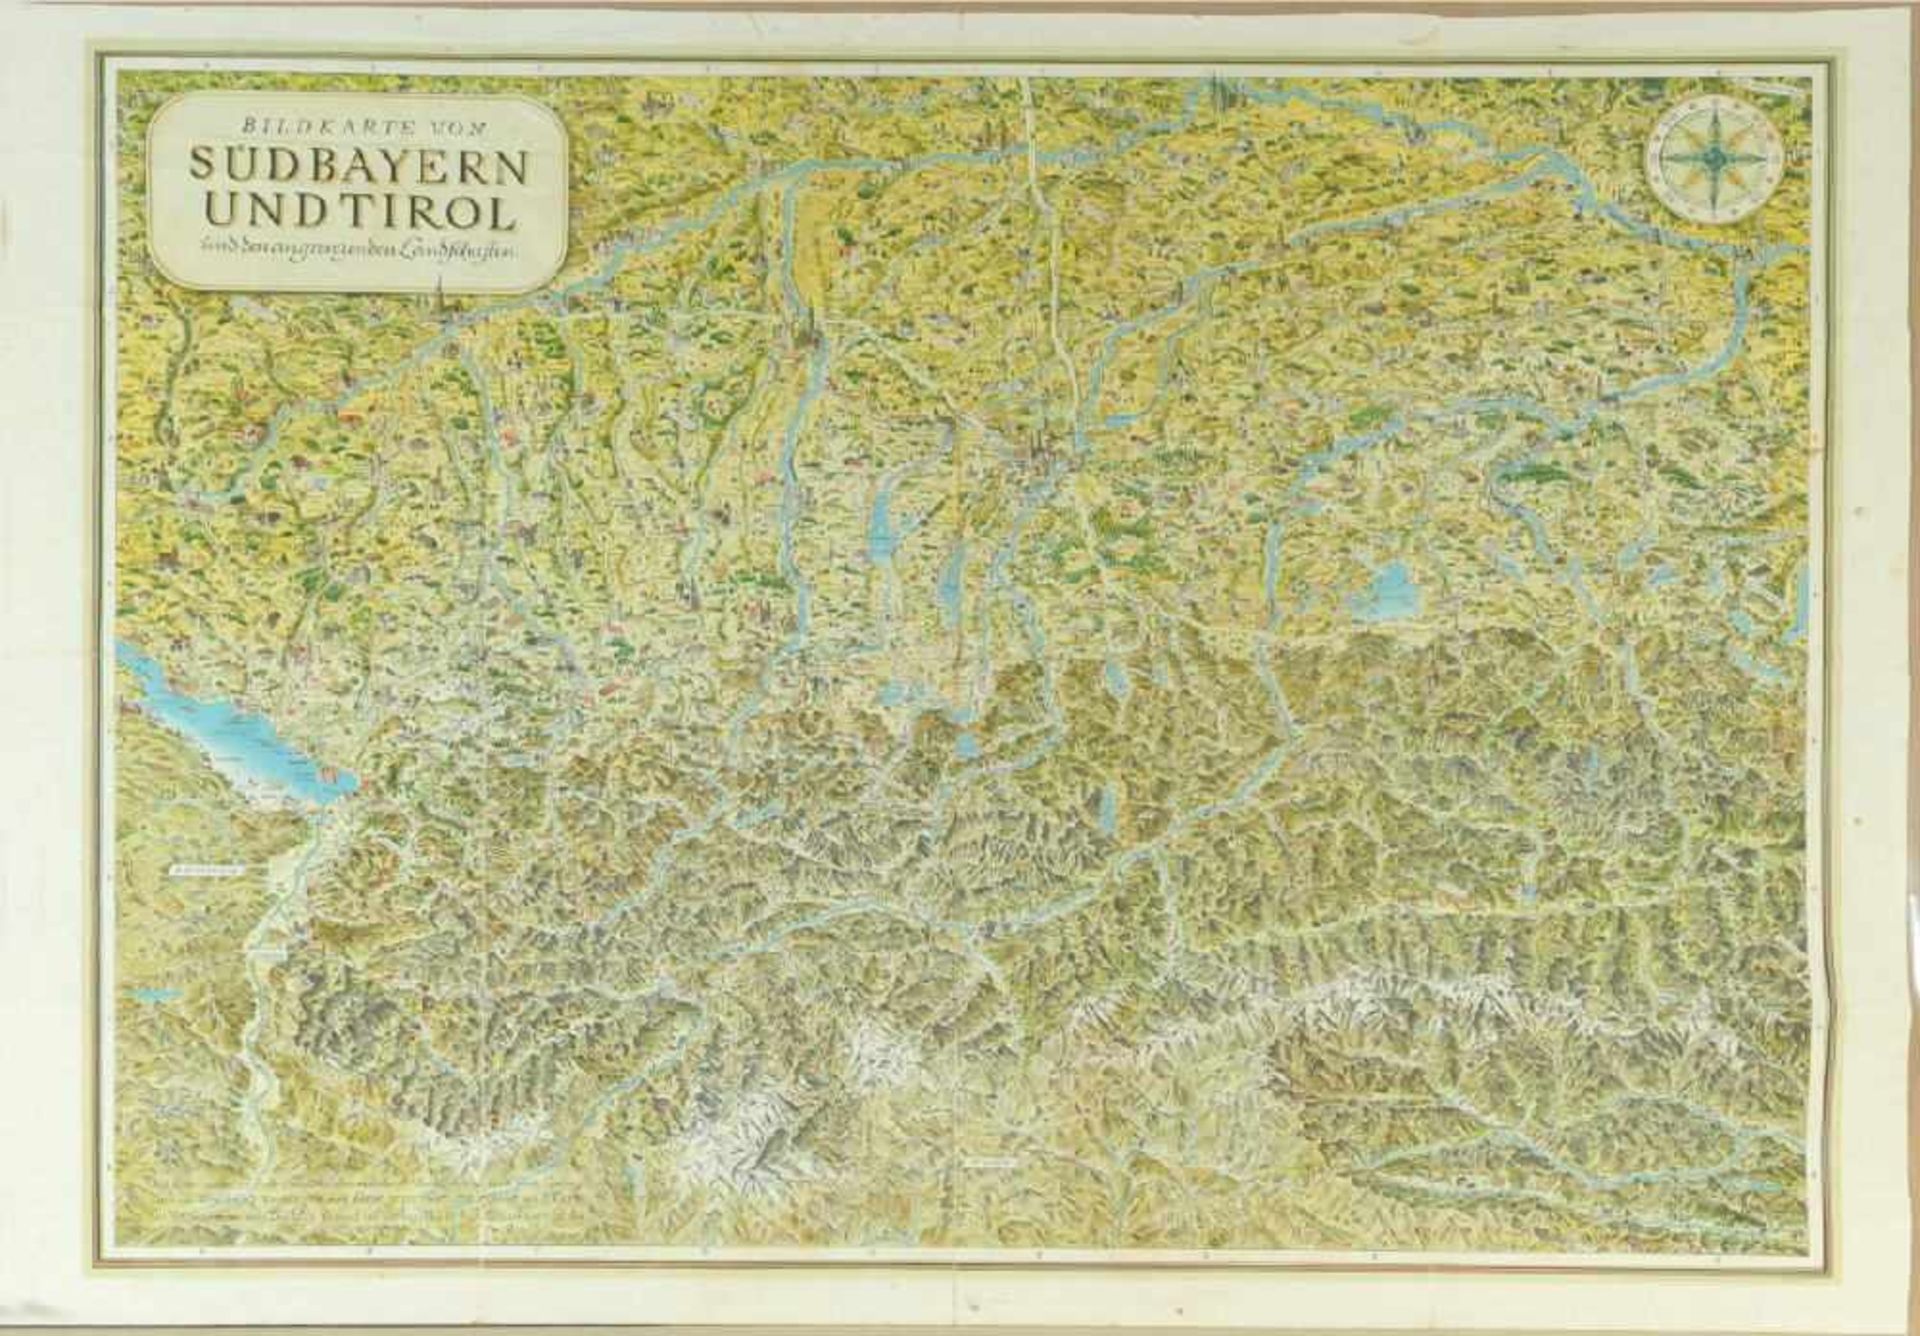 Landkarte "Bildkarte von Südbayern und Tirol"Farblithographie, 84 x 112 cm, von Fritz Loehr, bei